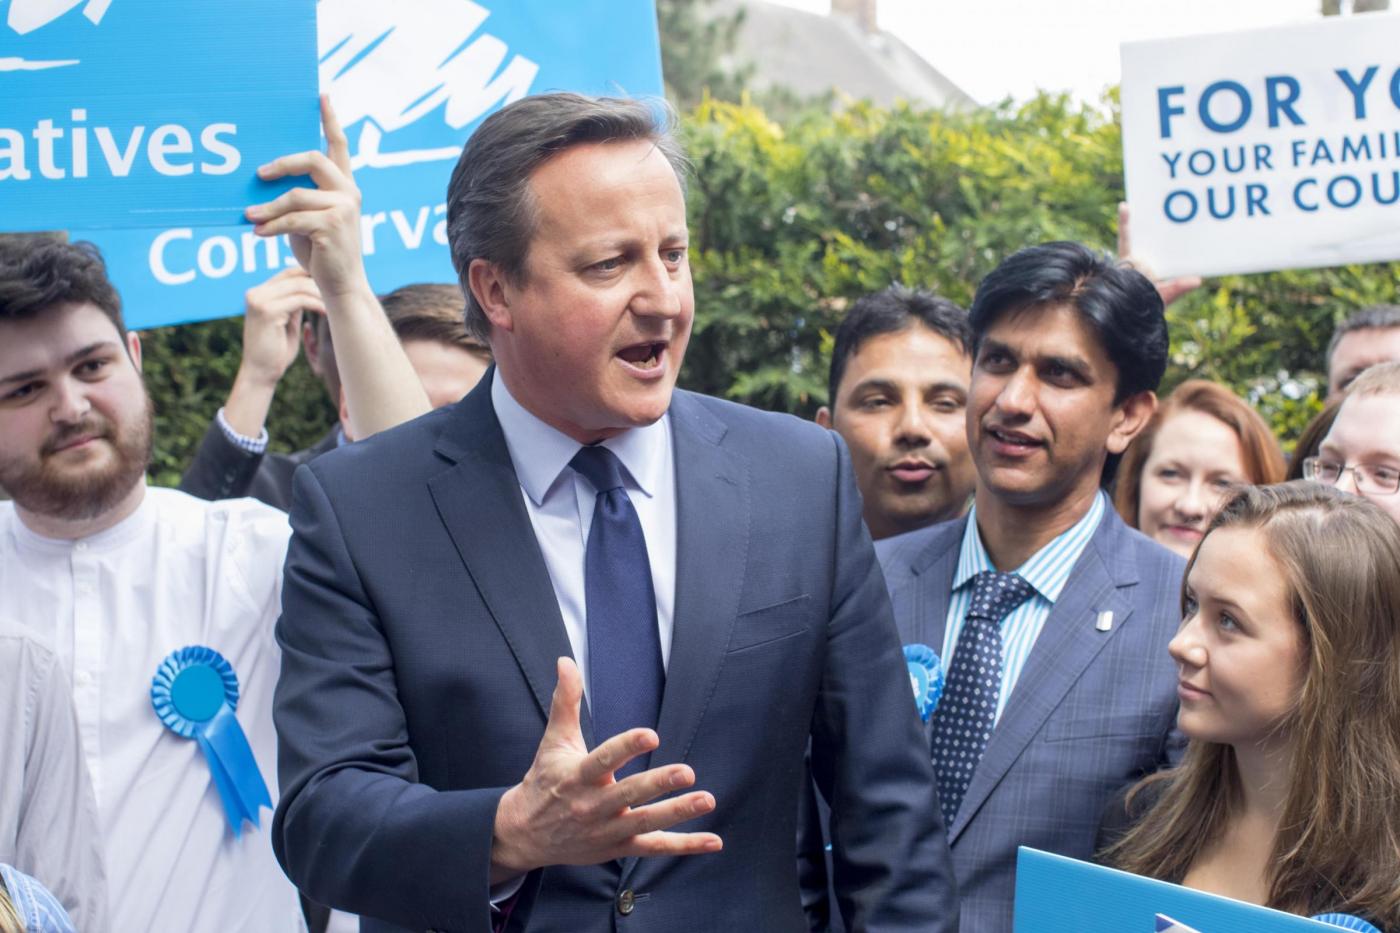 Cameron incontra consiglieri locali a Peterborough per congratularsi del successo elettorale.